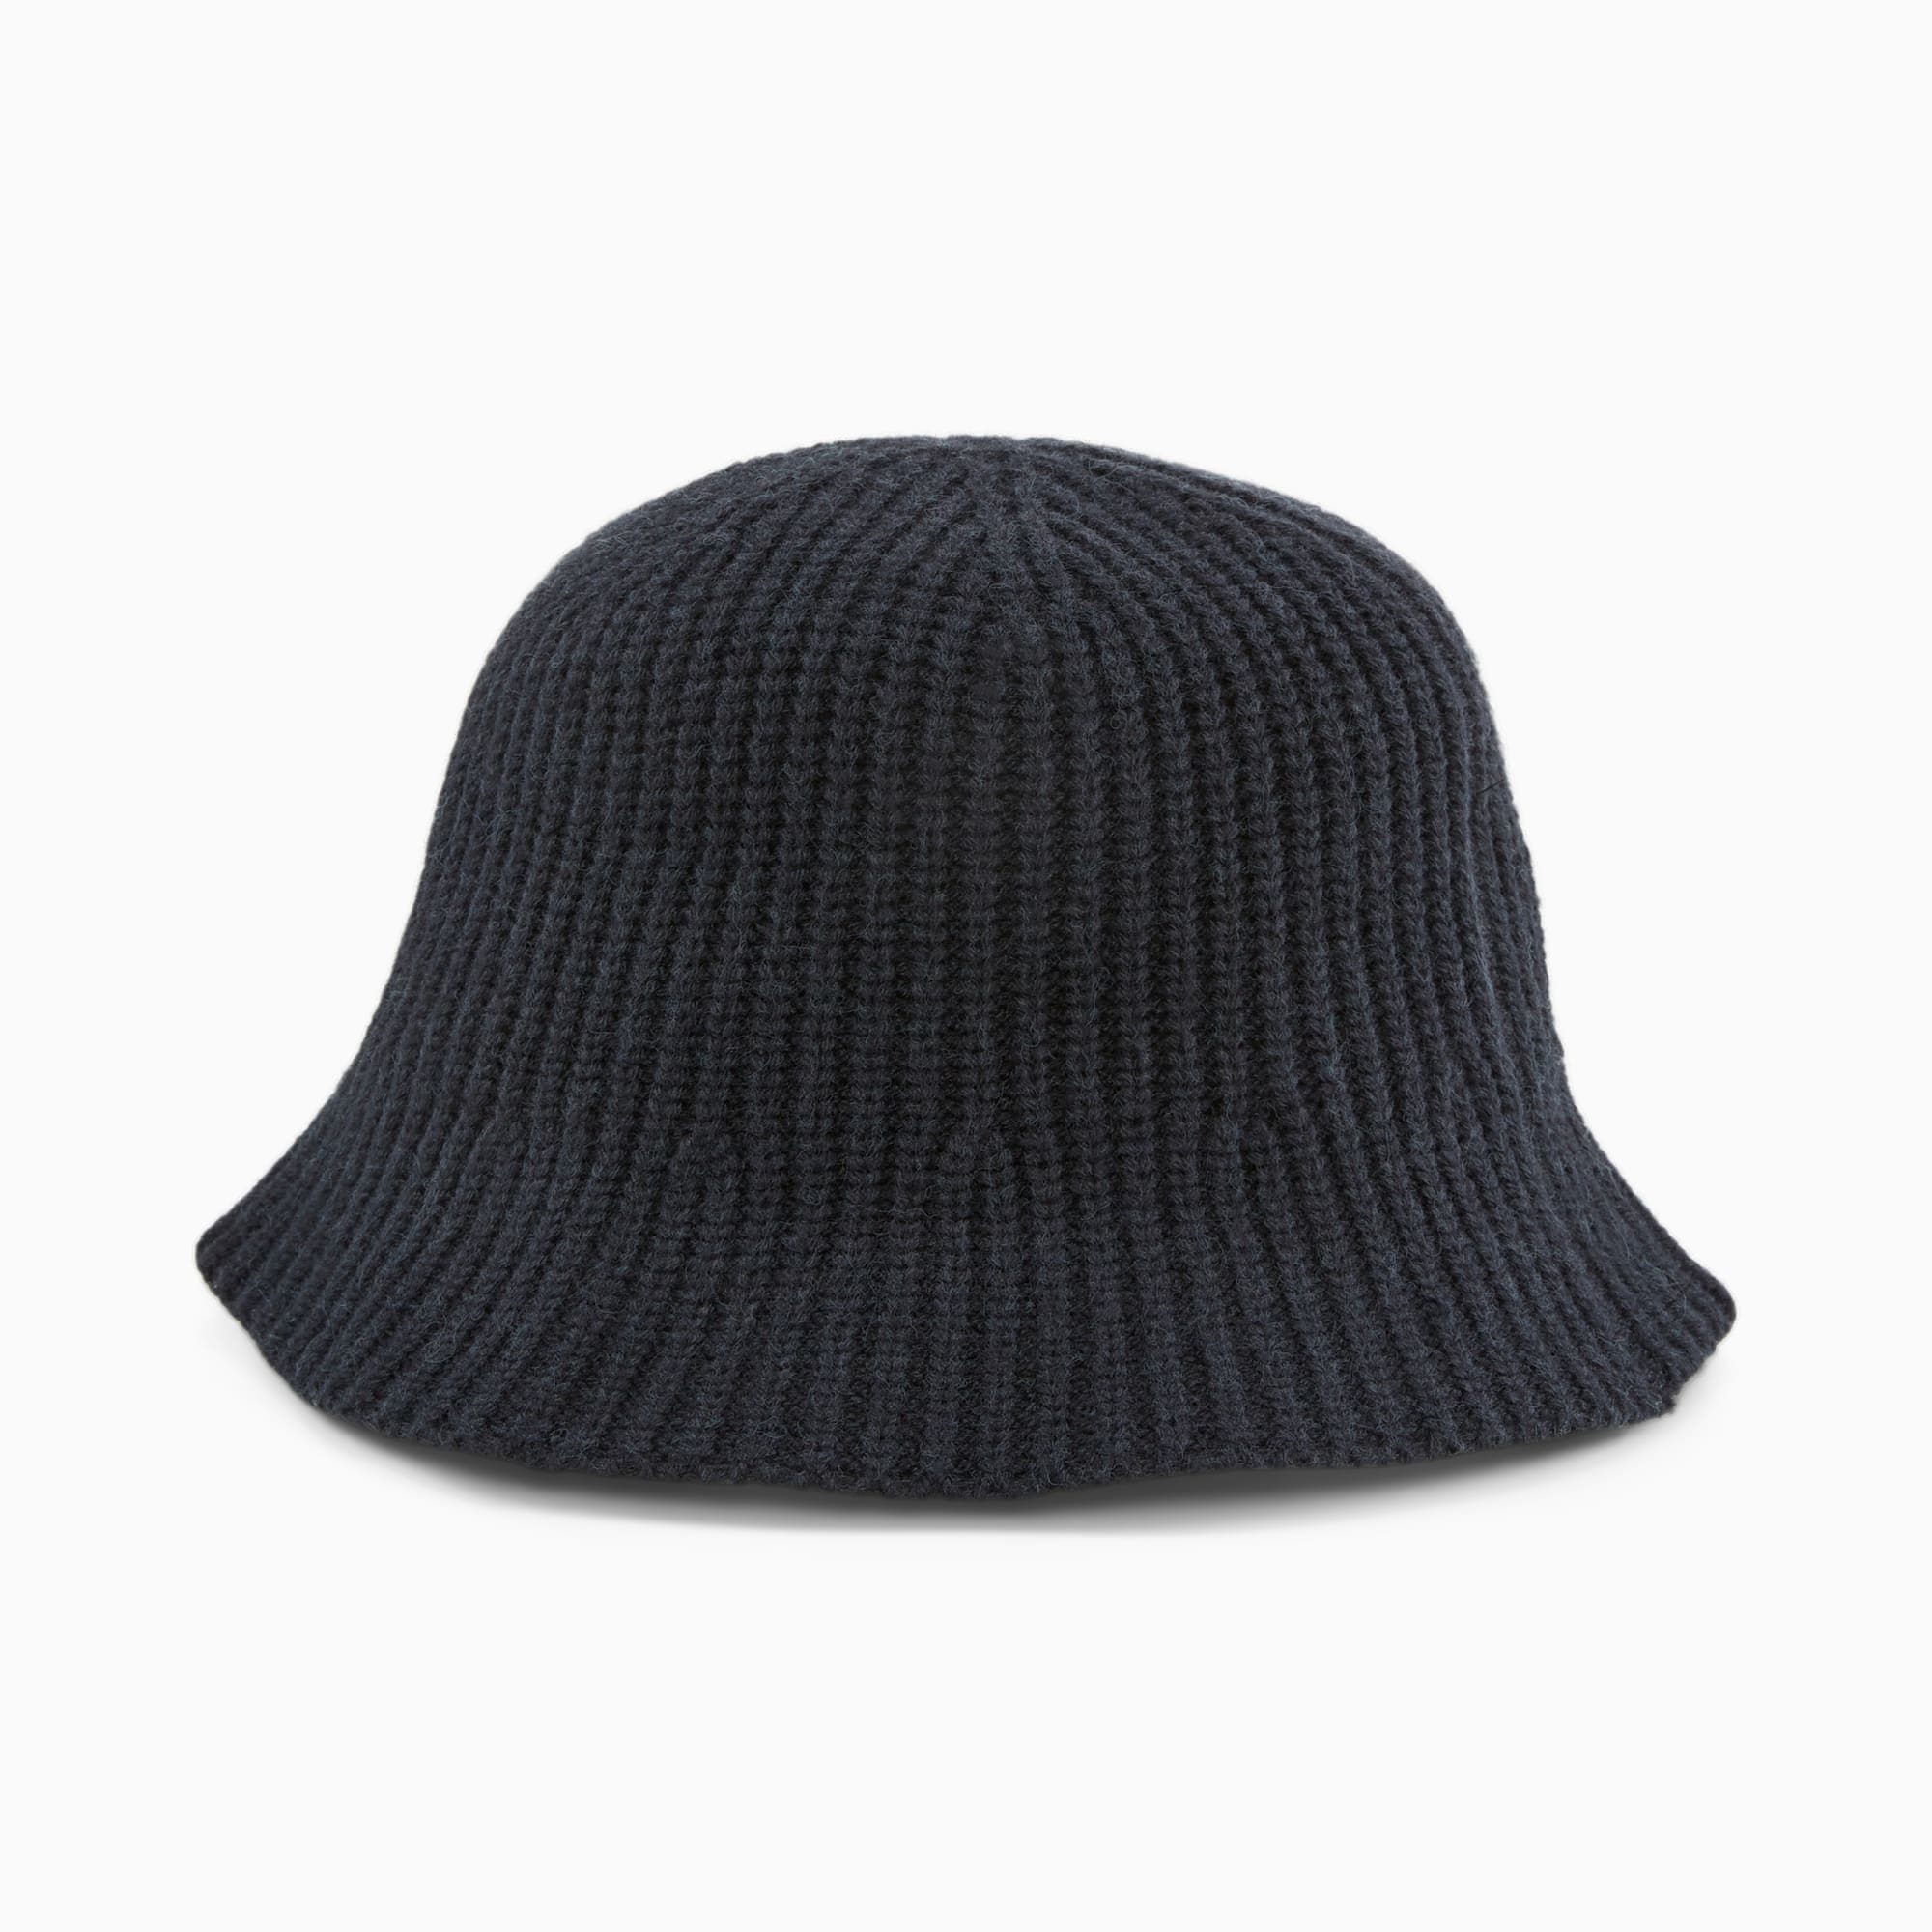 PUMA PRIME Knitted Bucket Hat Für Damen, Schwarz, Größe: L/XL, Accessoires